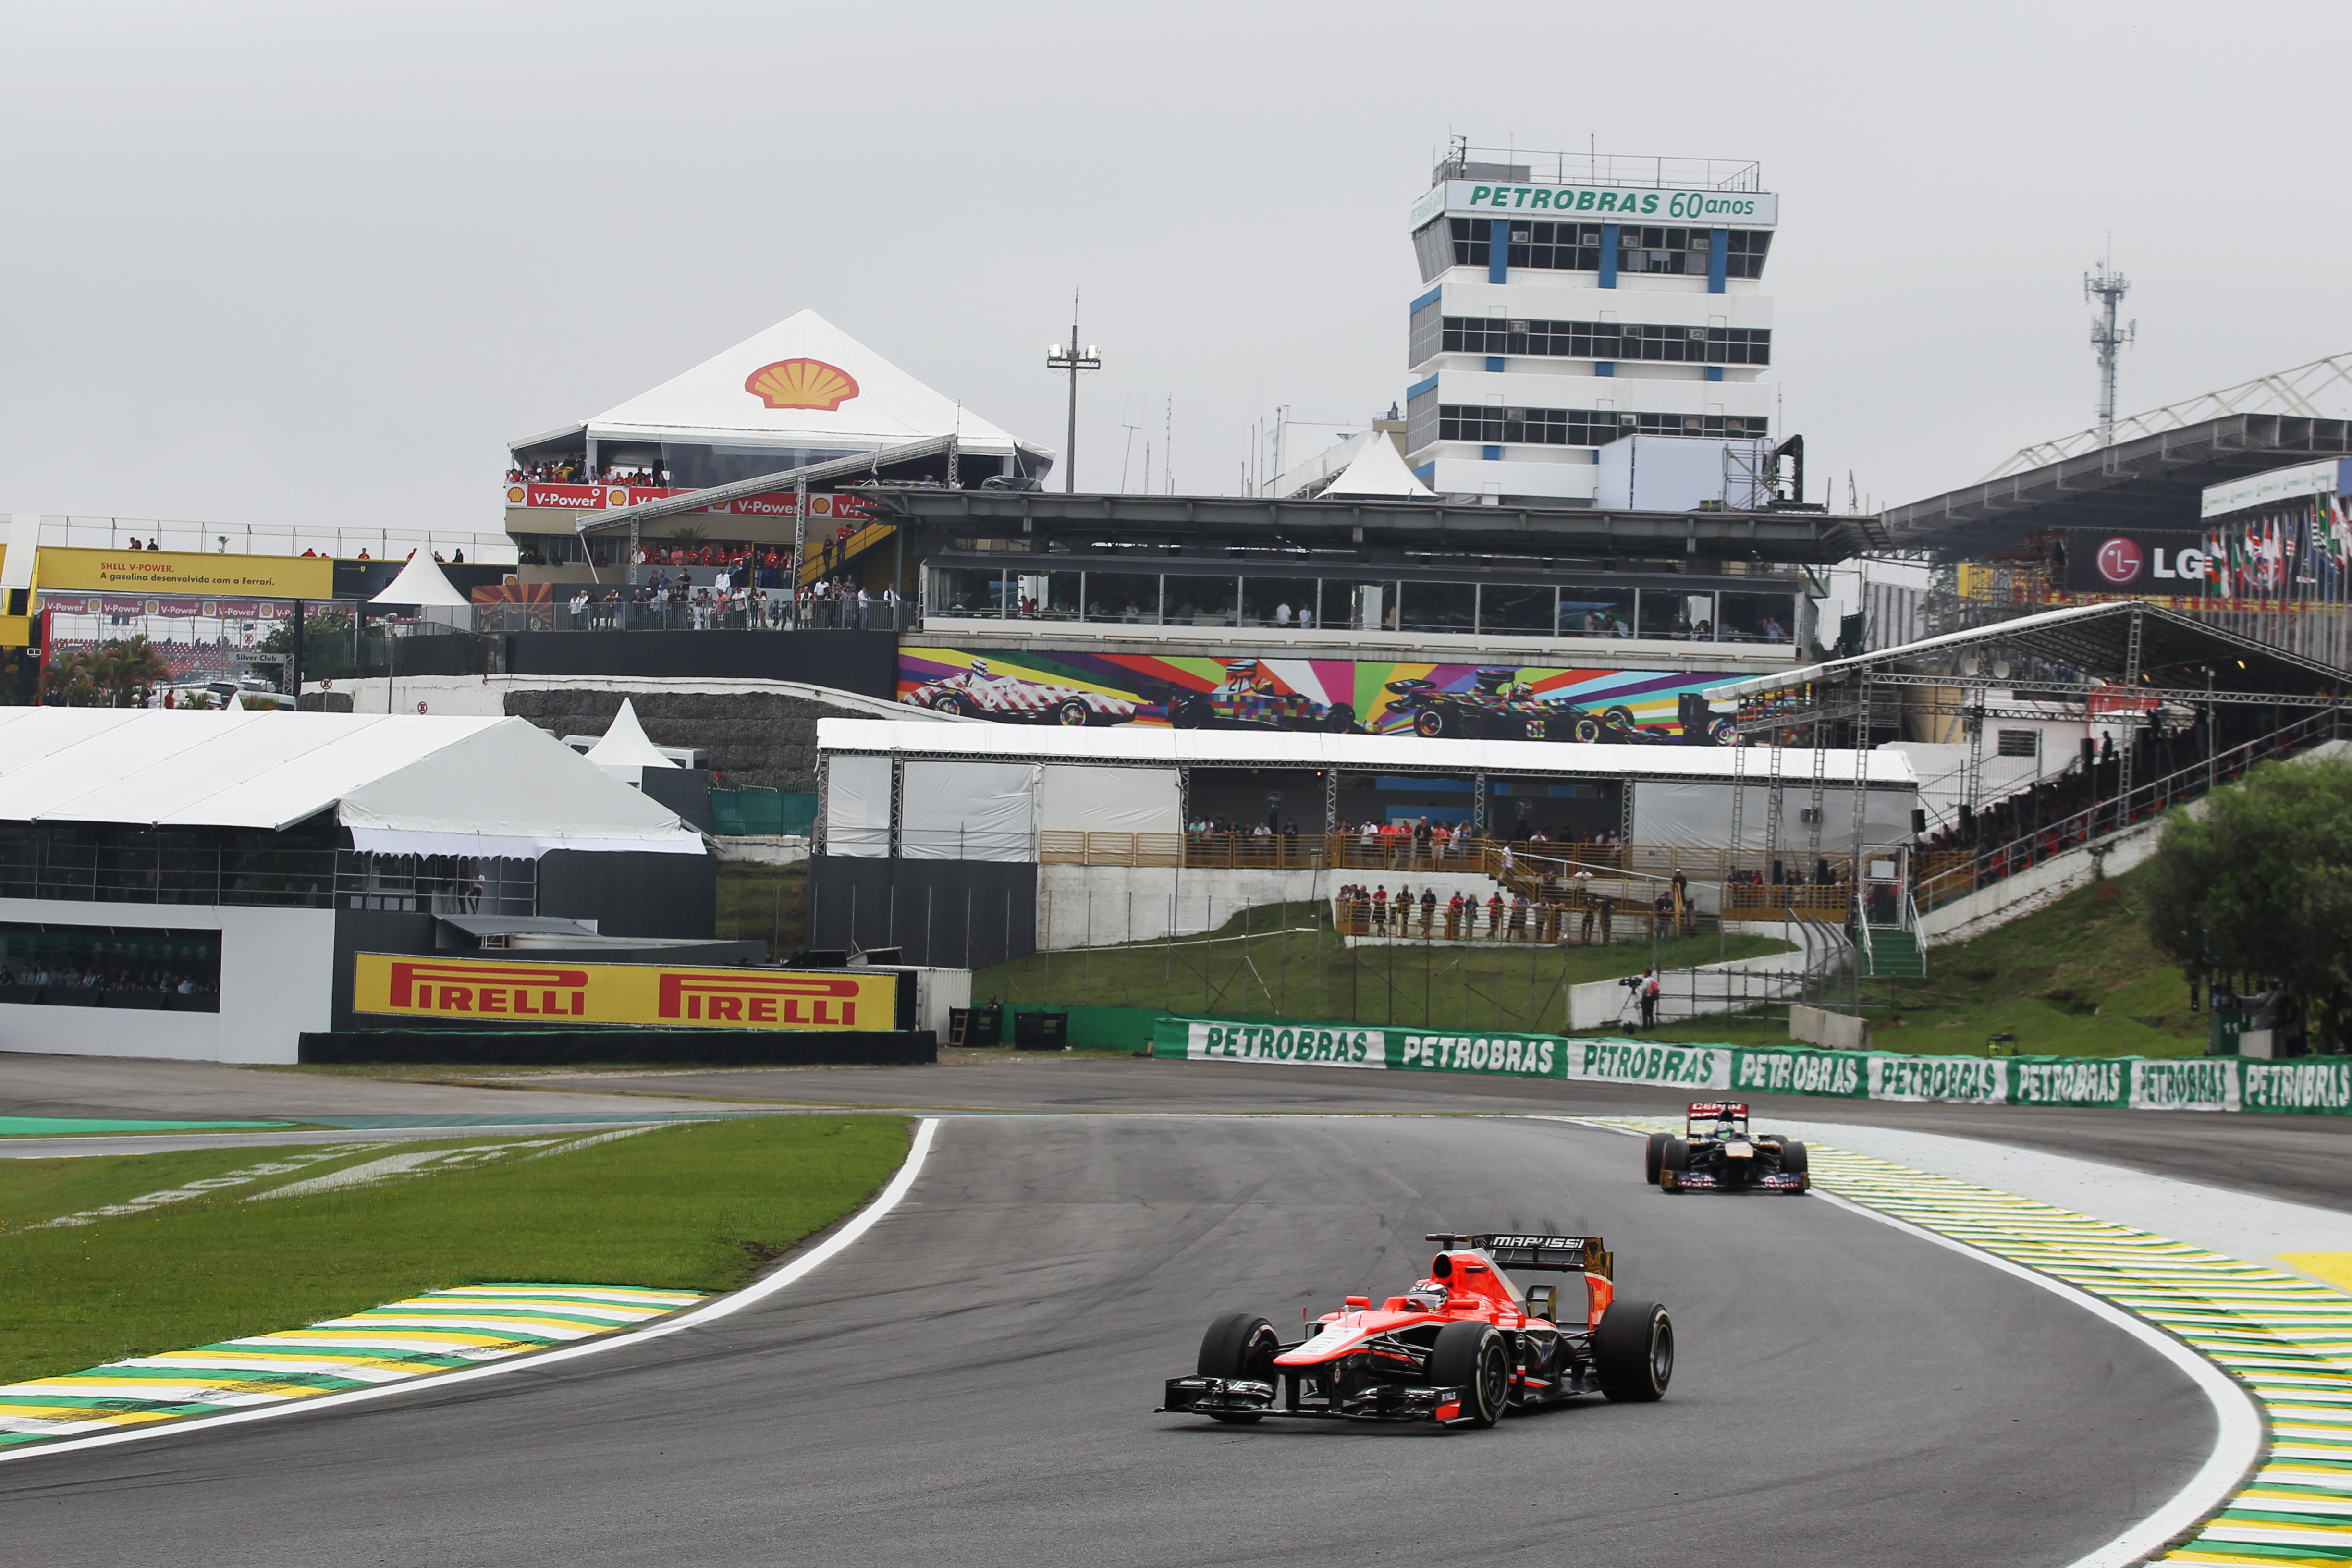 Marussia wil naar Q2 in 2014